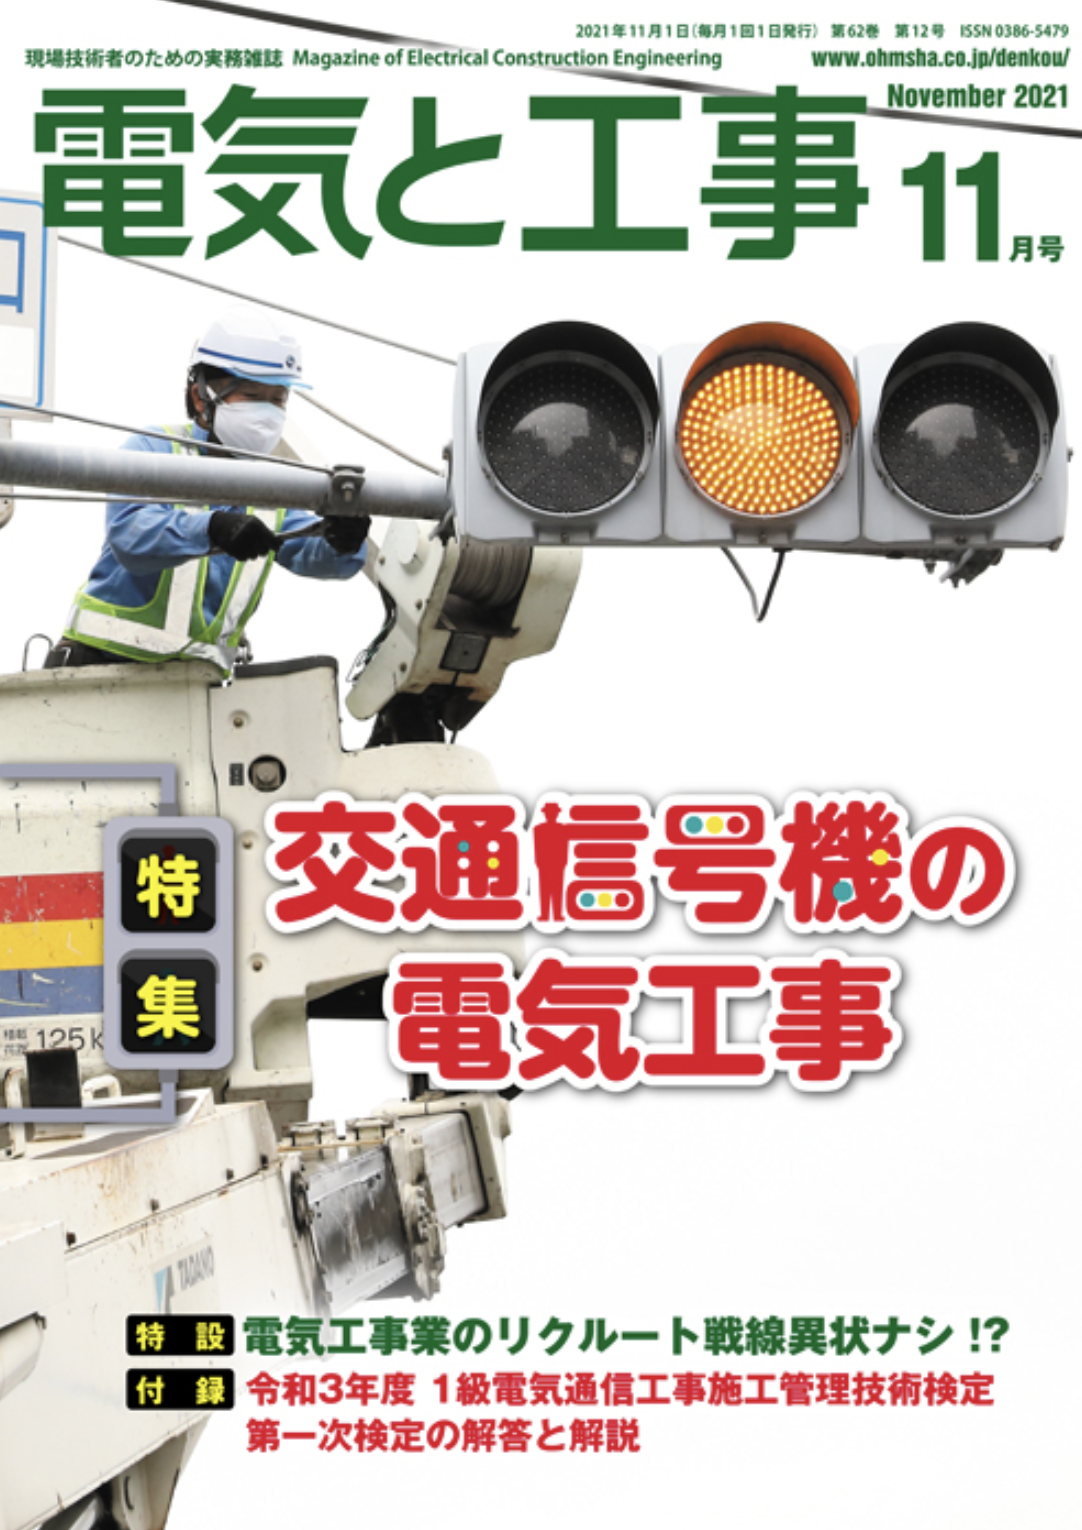 【新刊トピックス2021年10月】電気と工事 2021年11月号 (第62巻第12号通巻819号)の画像